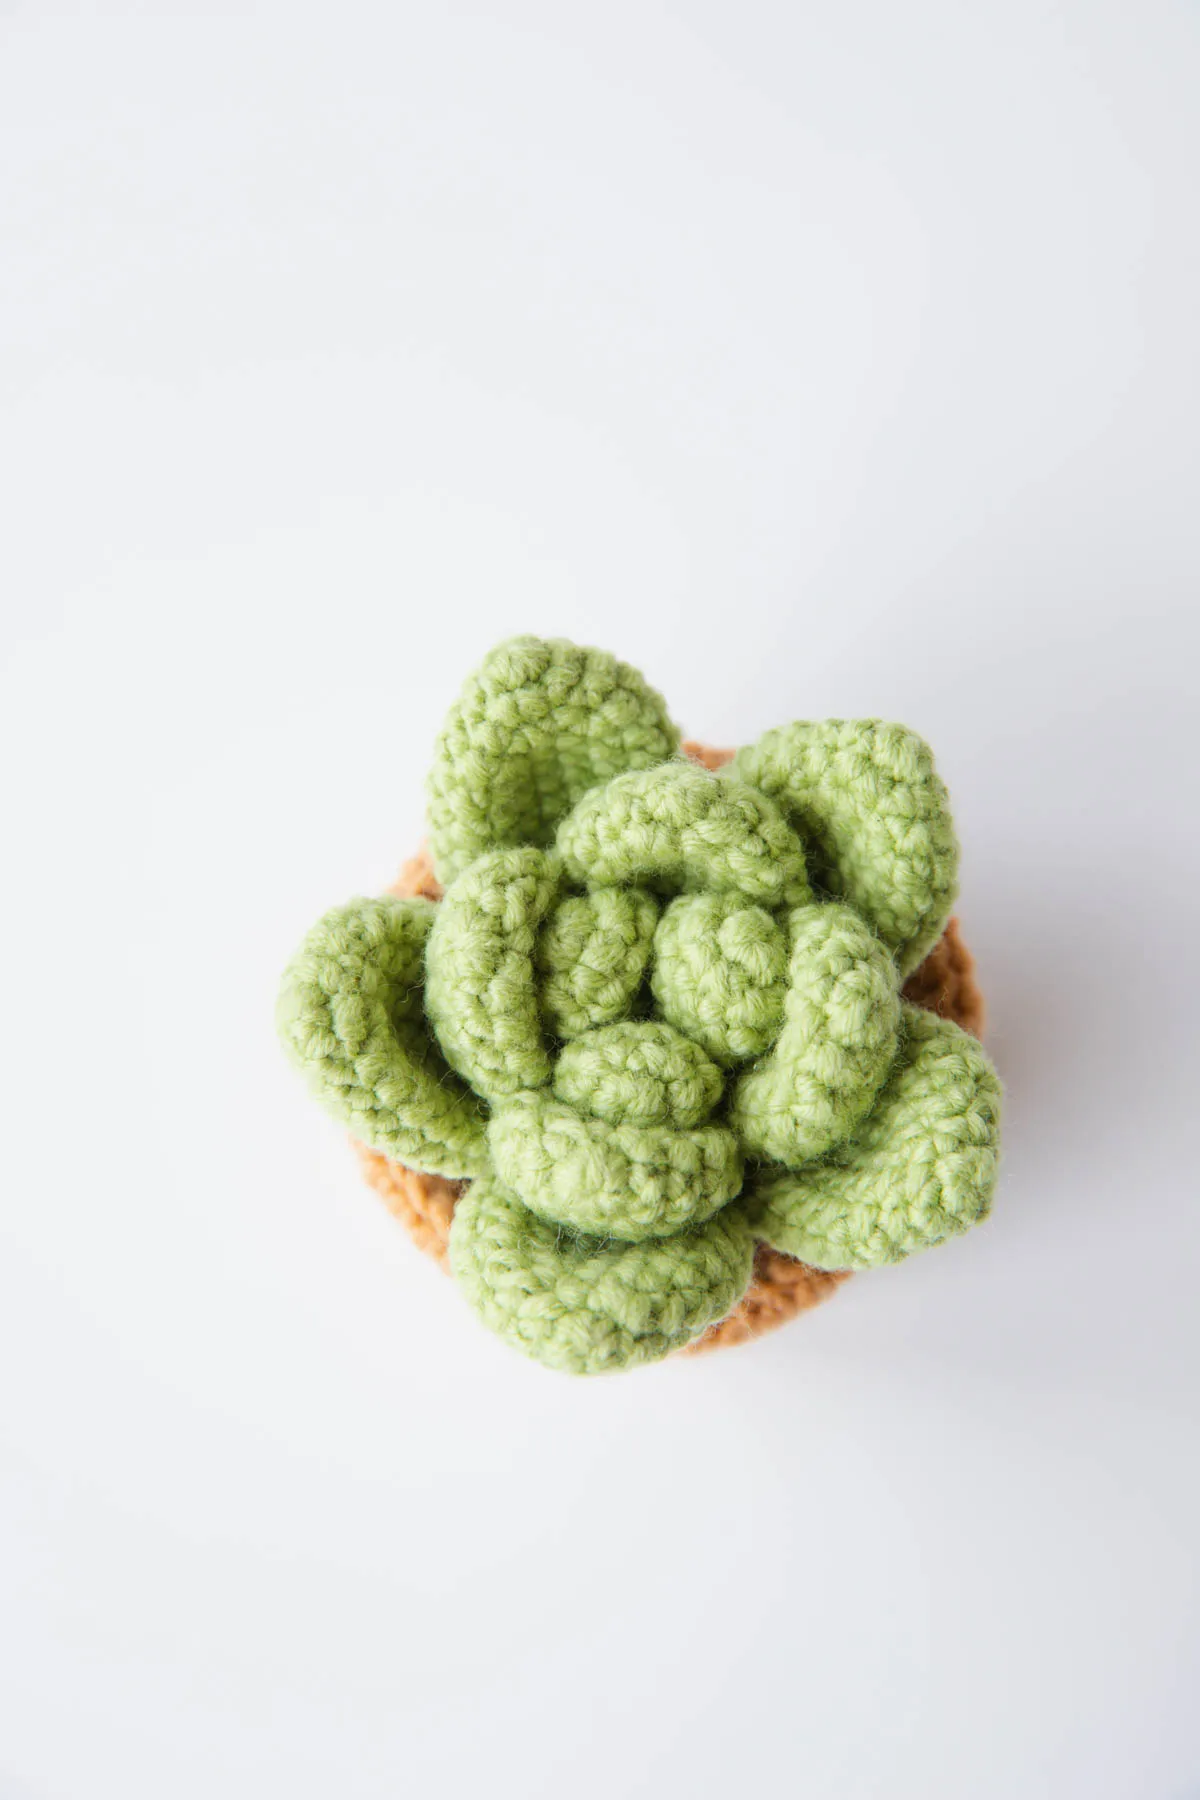 Crochet green succulent|hookok